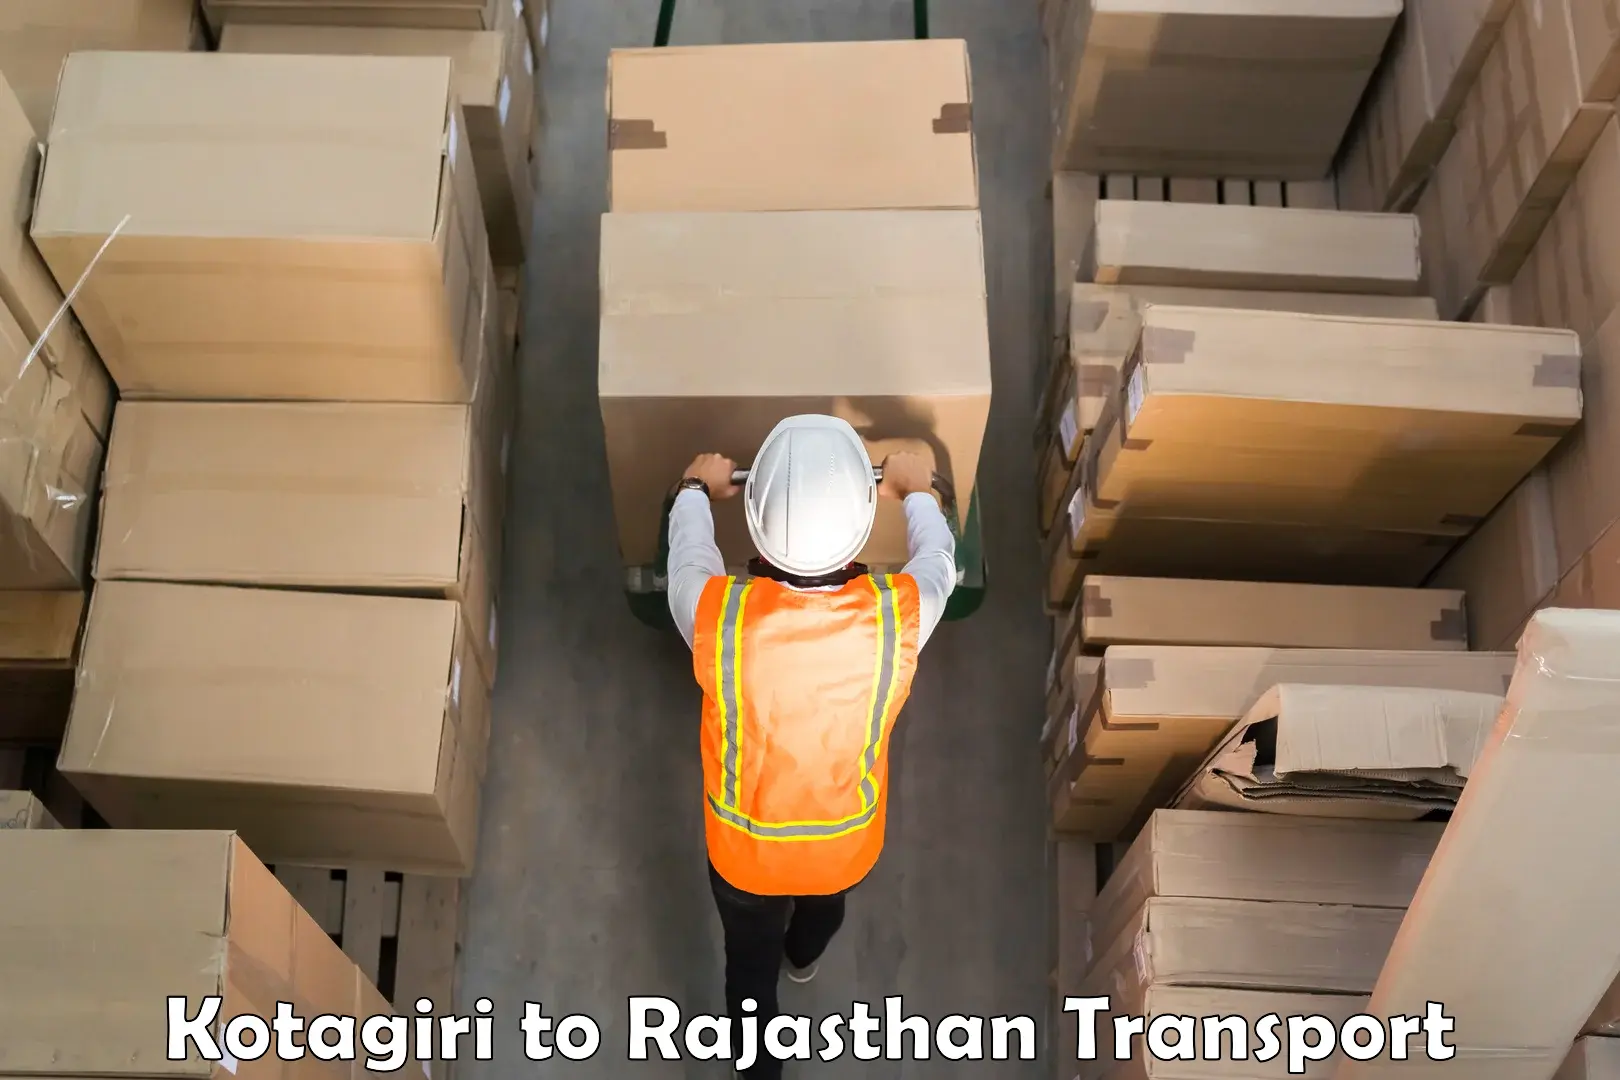 Furniture transport service Kotagiri to Rajasthan